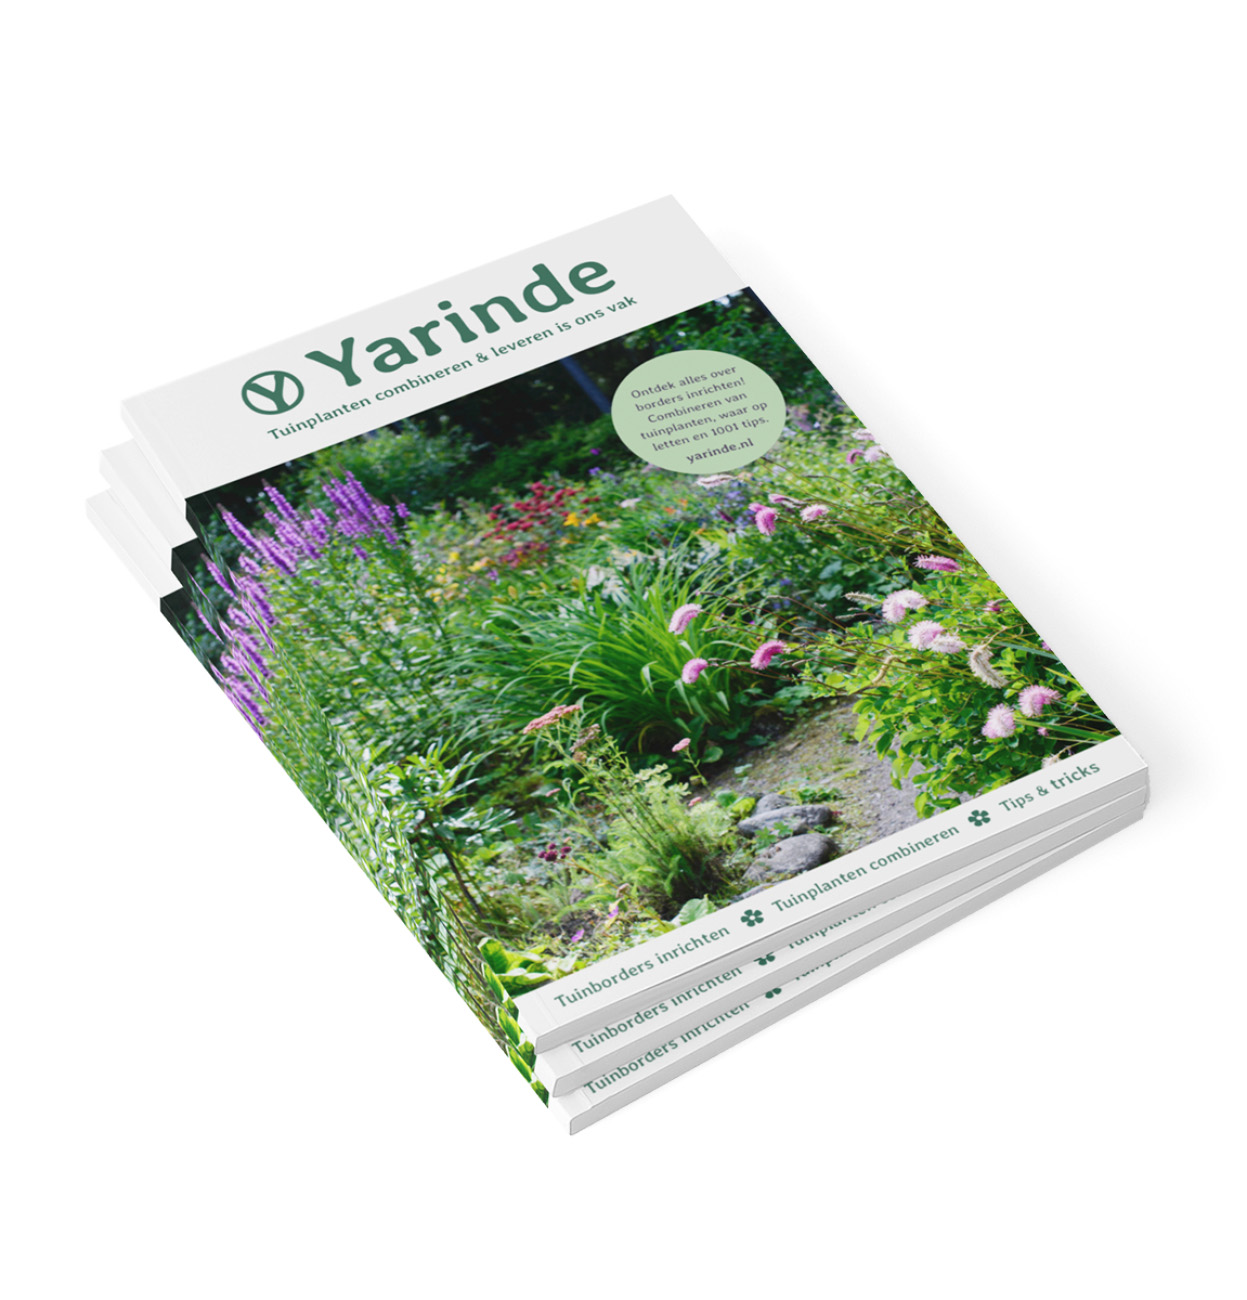 Yarinde magazine